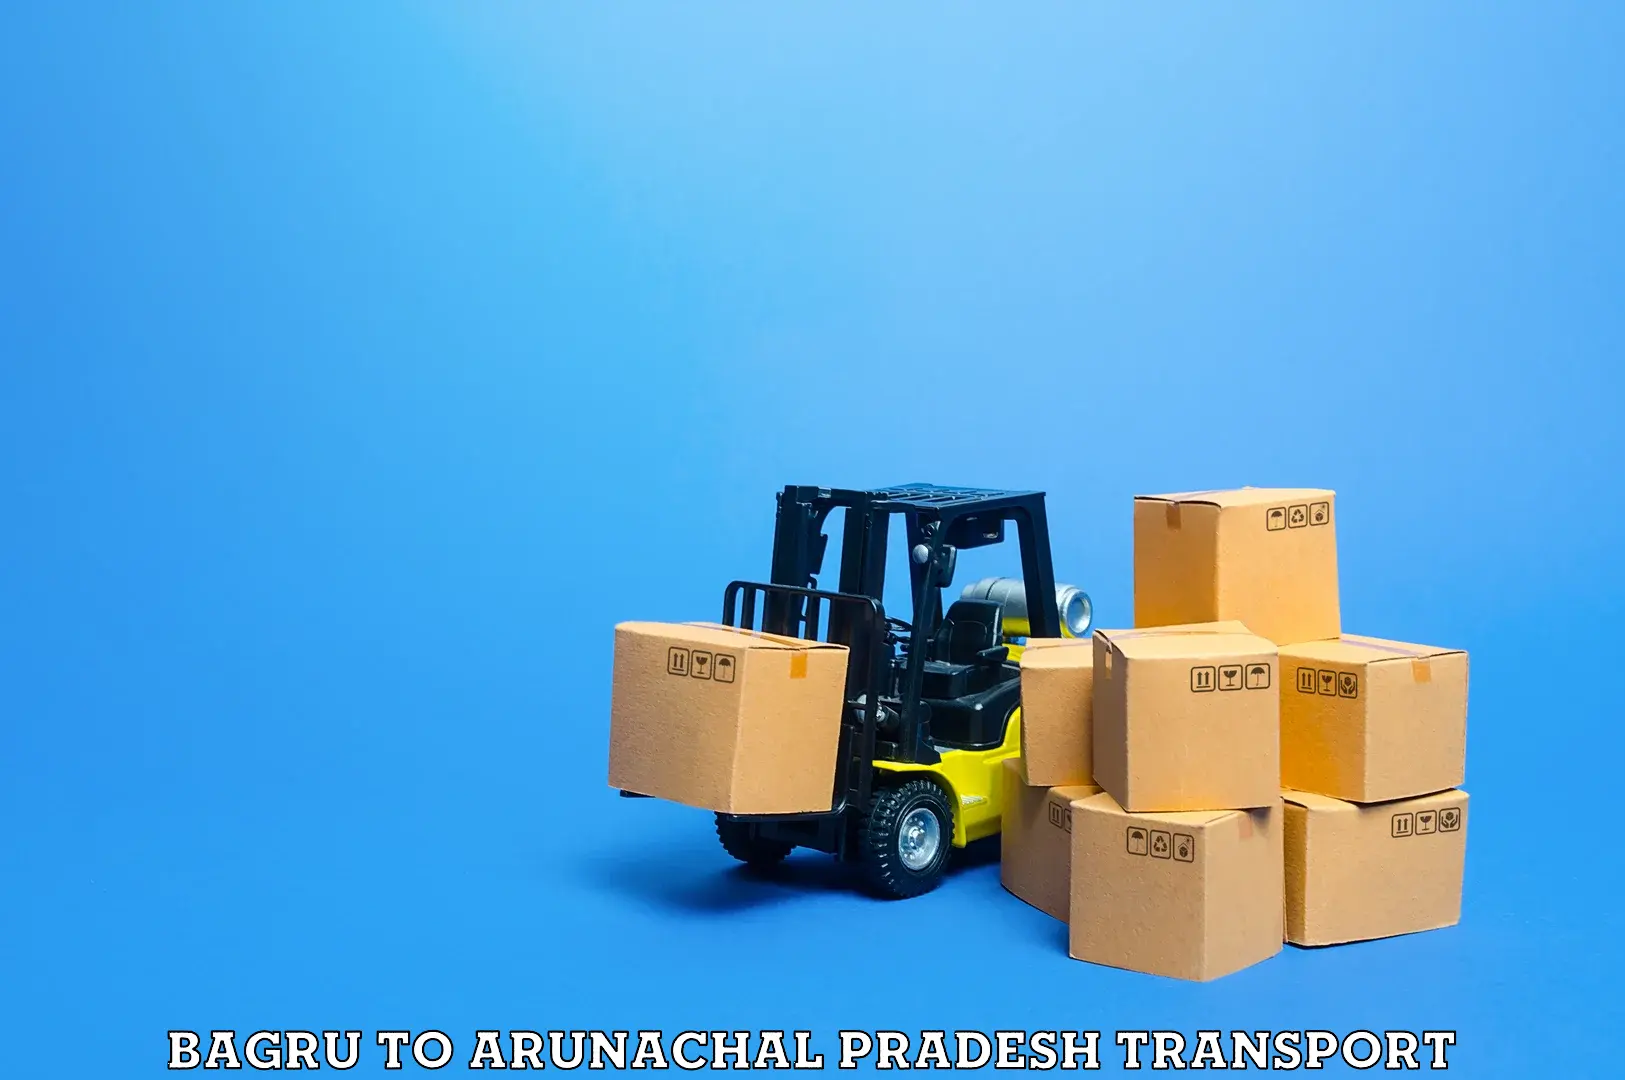 Truck transport companies in India Bagru to Tawang